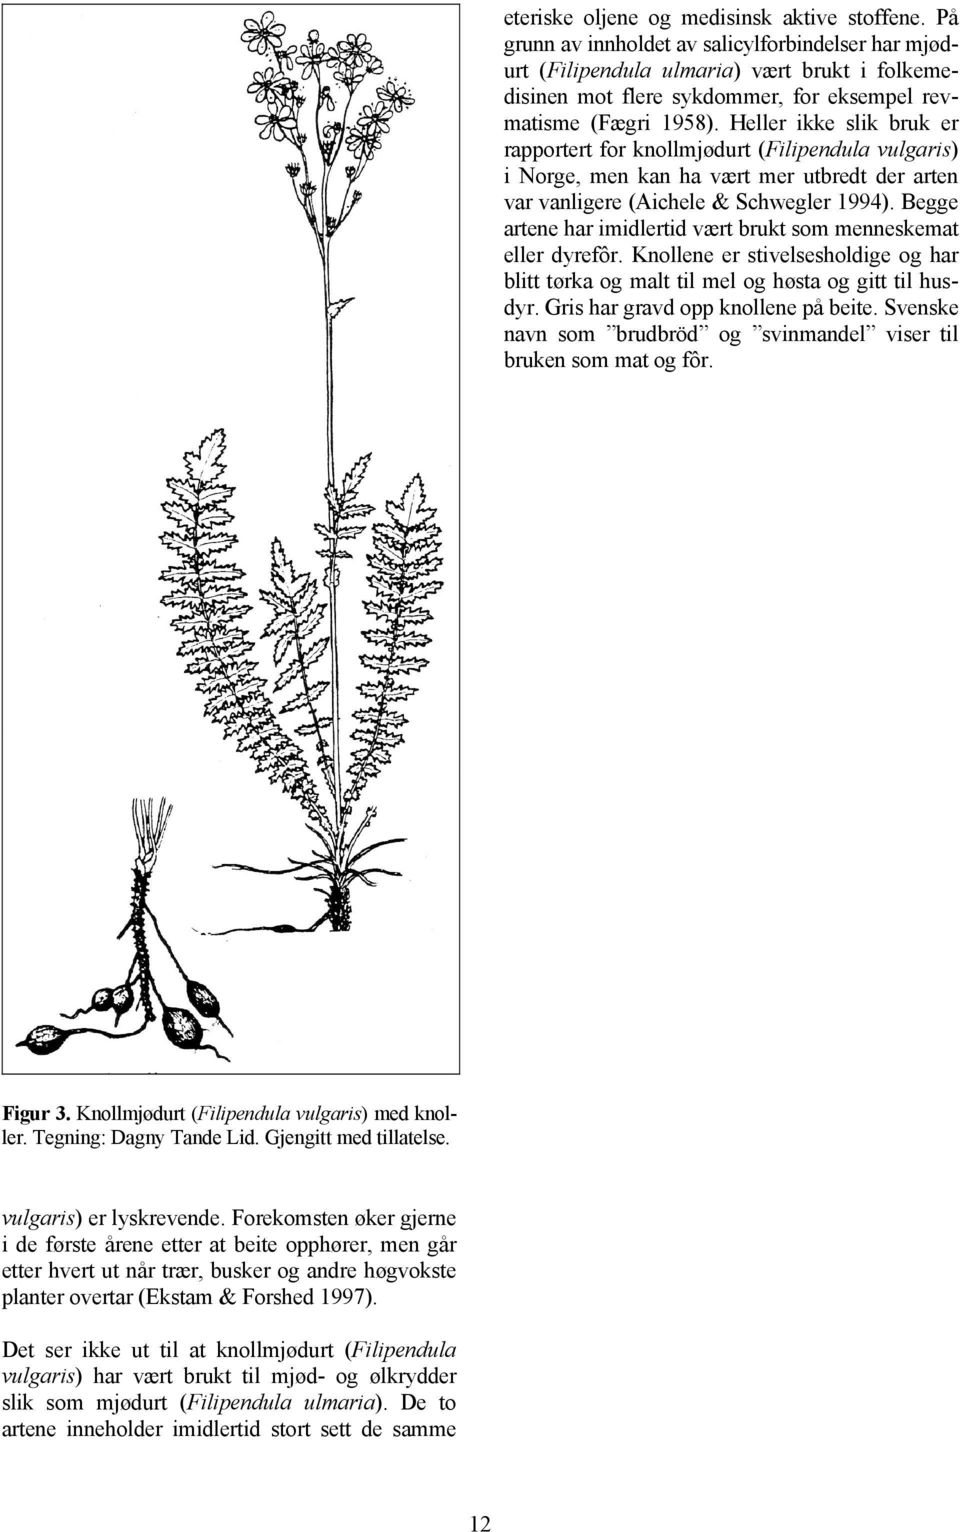 Heller ikke slik bruk er rapportert for knollmjødurt (Filipendula vulgaris) i Norge, men kan ha vært mer utbredt der arten var vanligere (Aichele & Schwegler 1994).